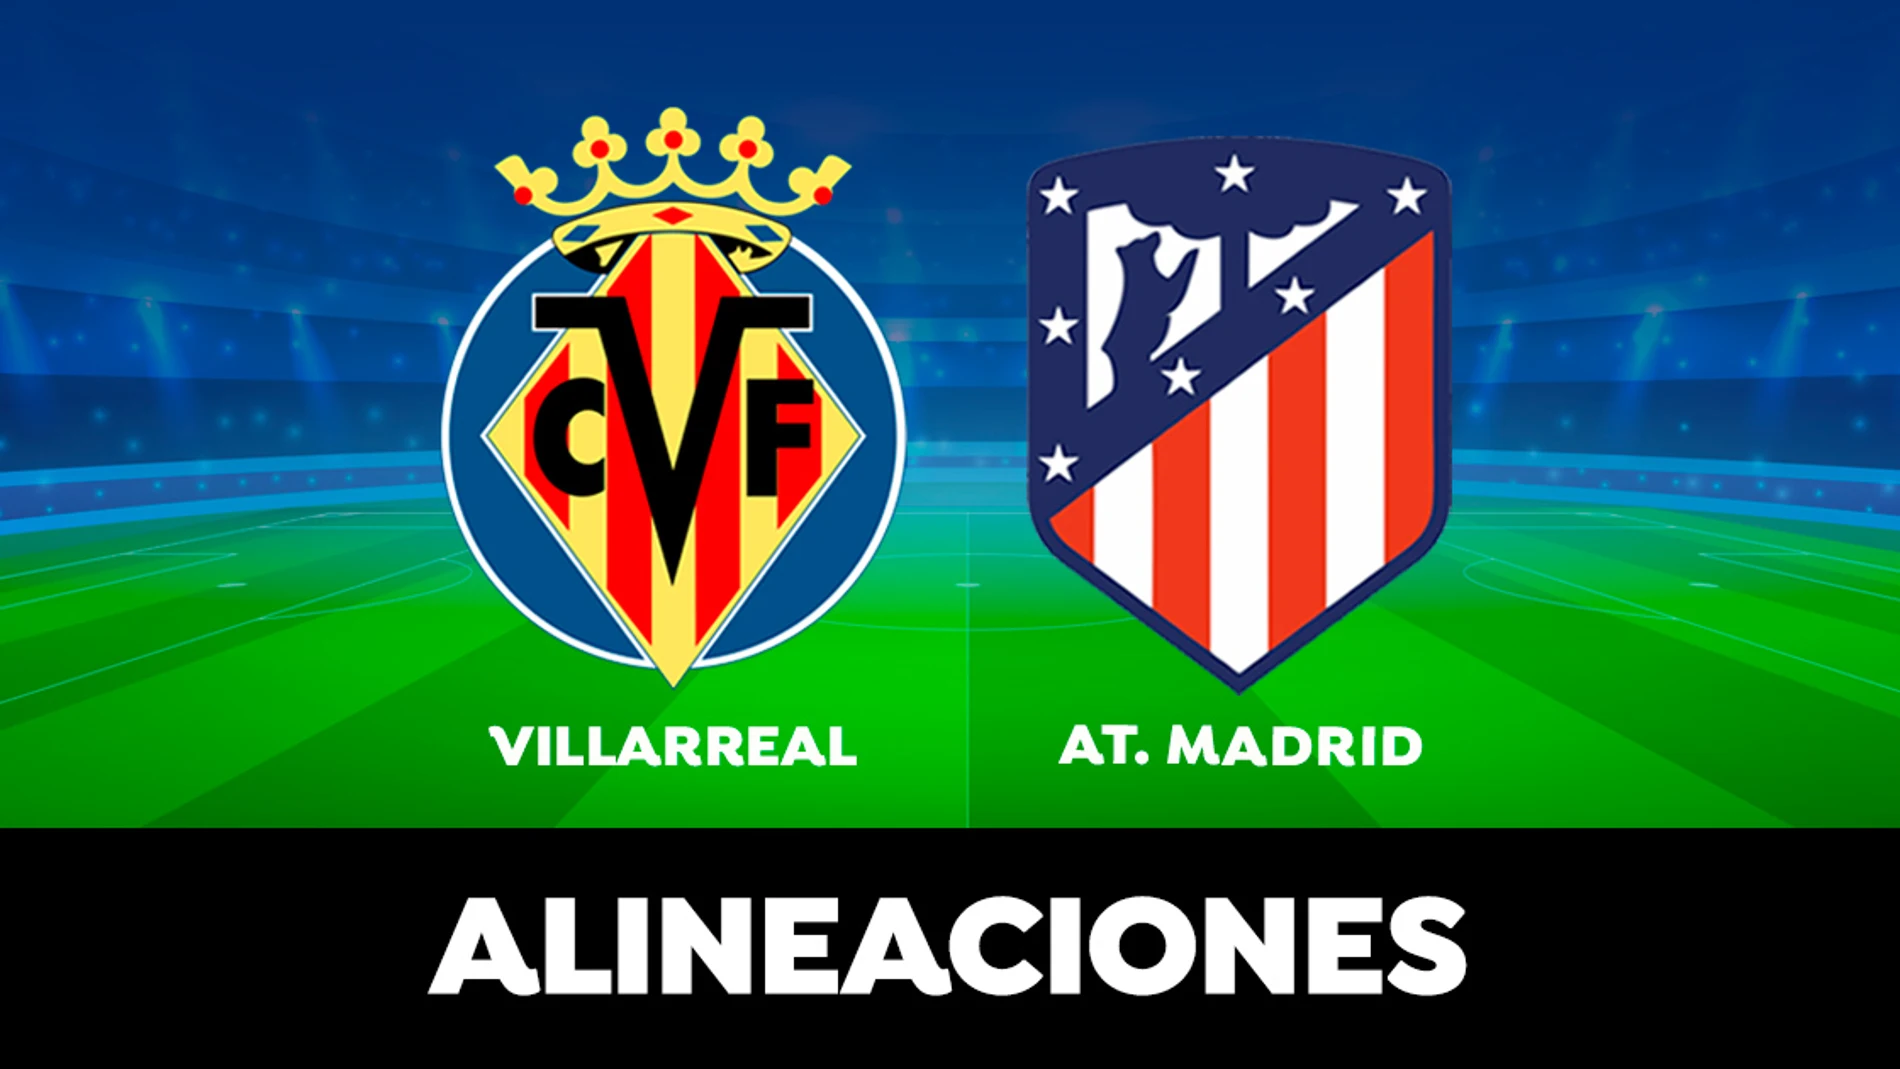 Alineación del Atlético de Madrid hoy contra el Villarreal en el partido de la Liga